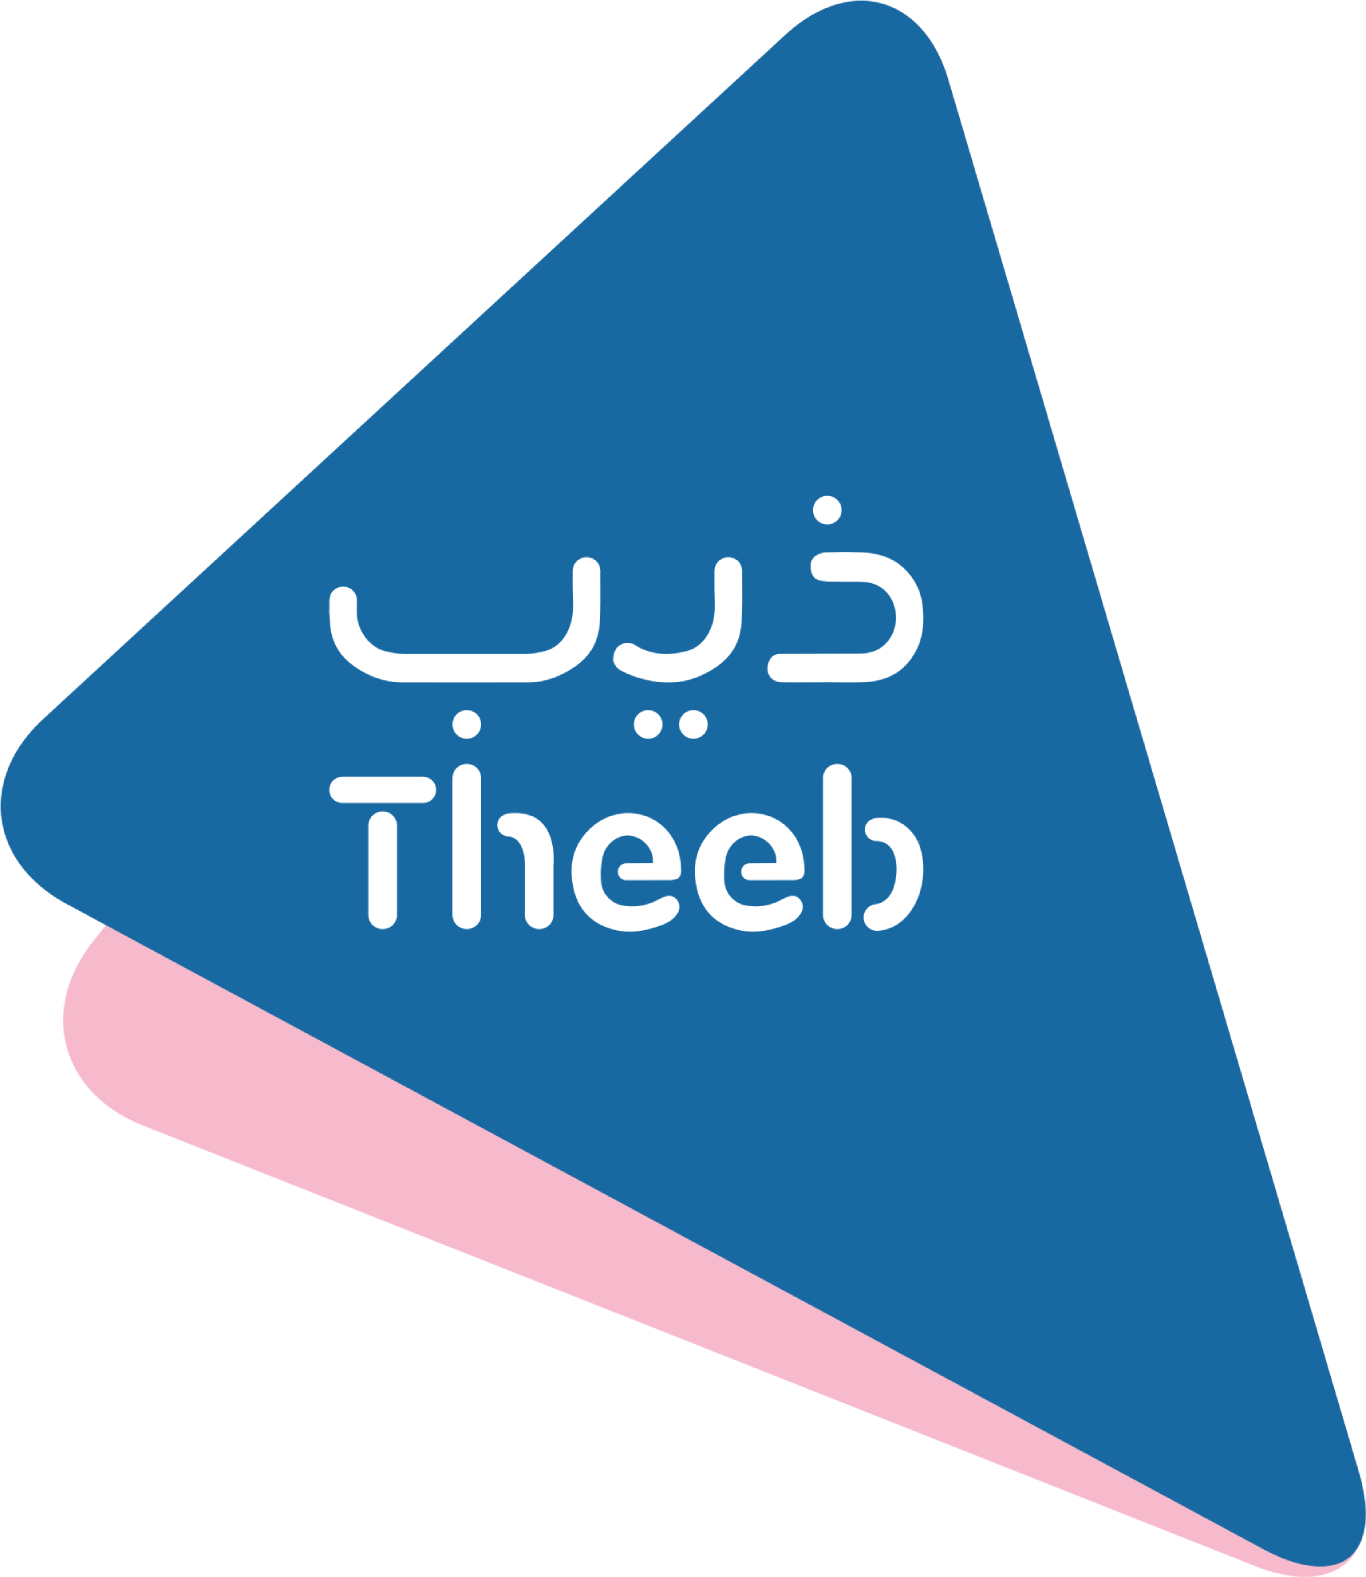 Theeb Rent A Car Company logo (transparent PNG)